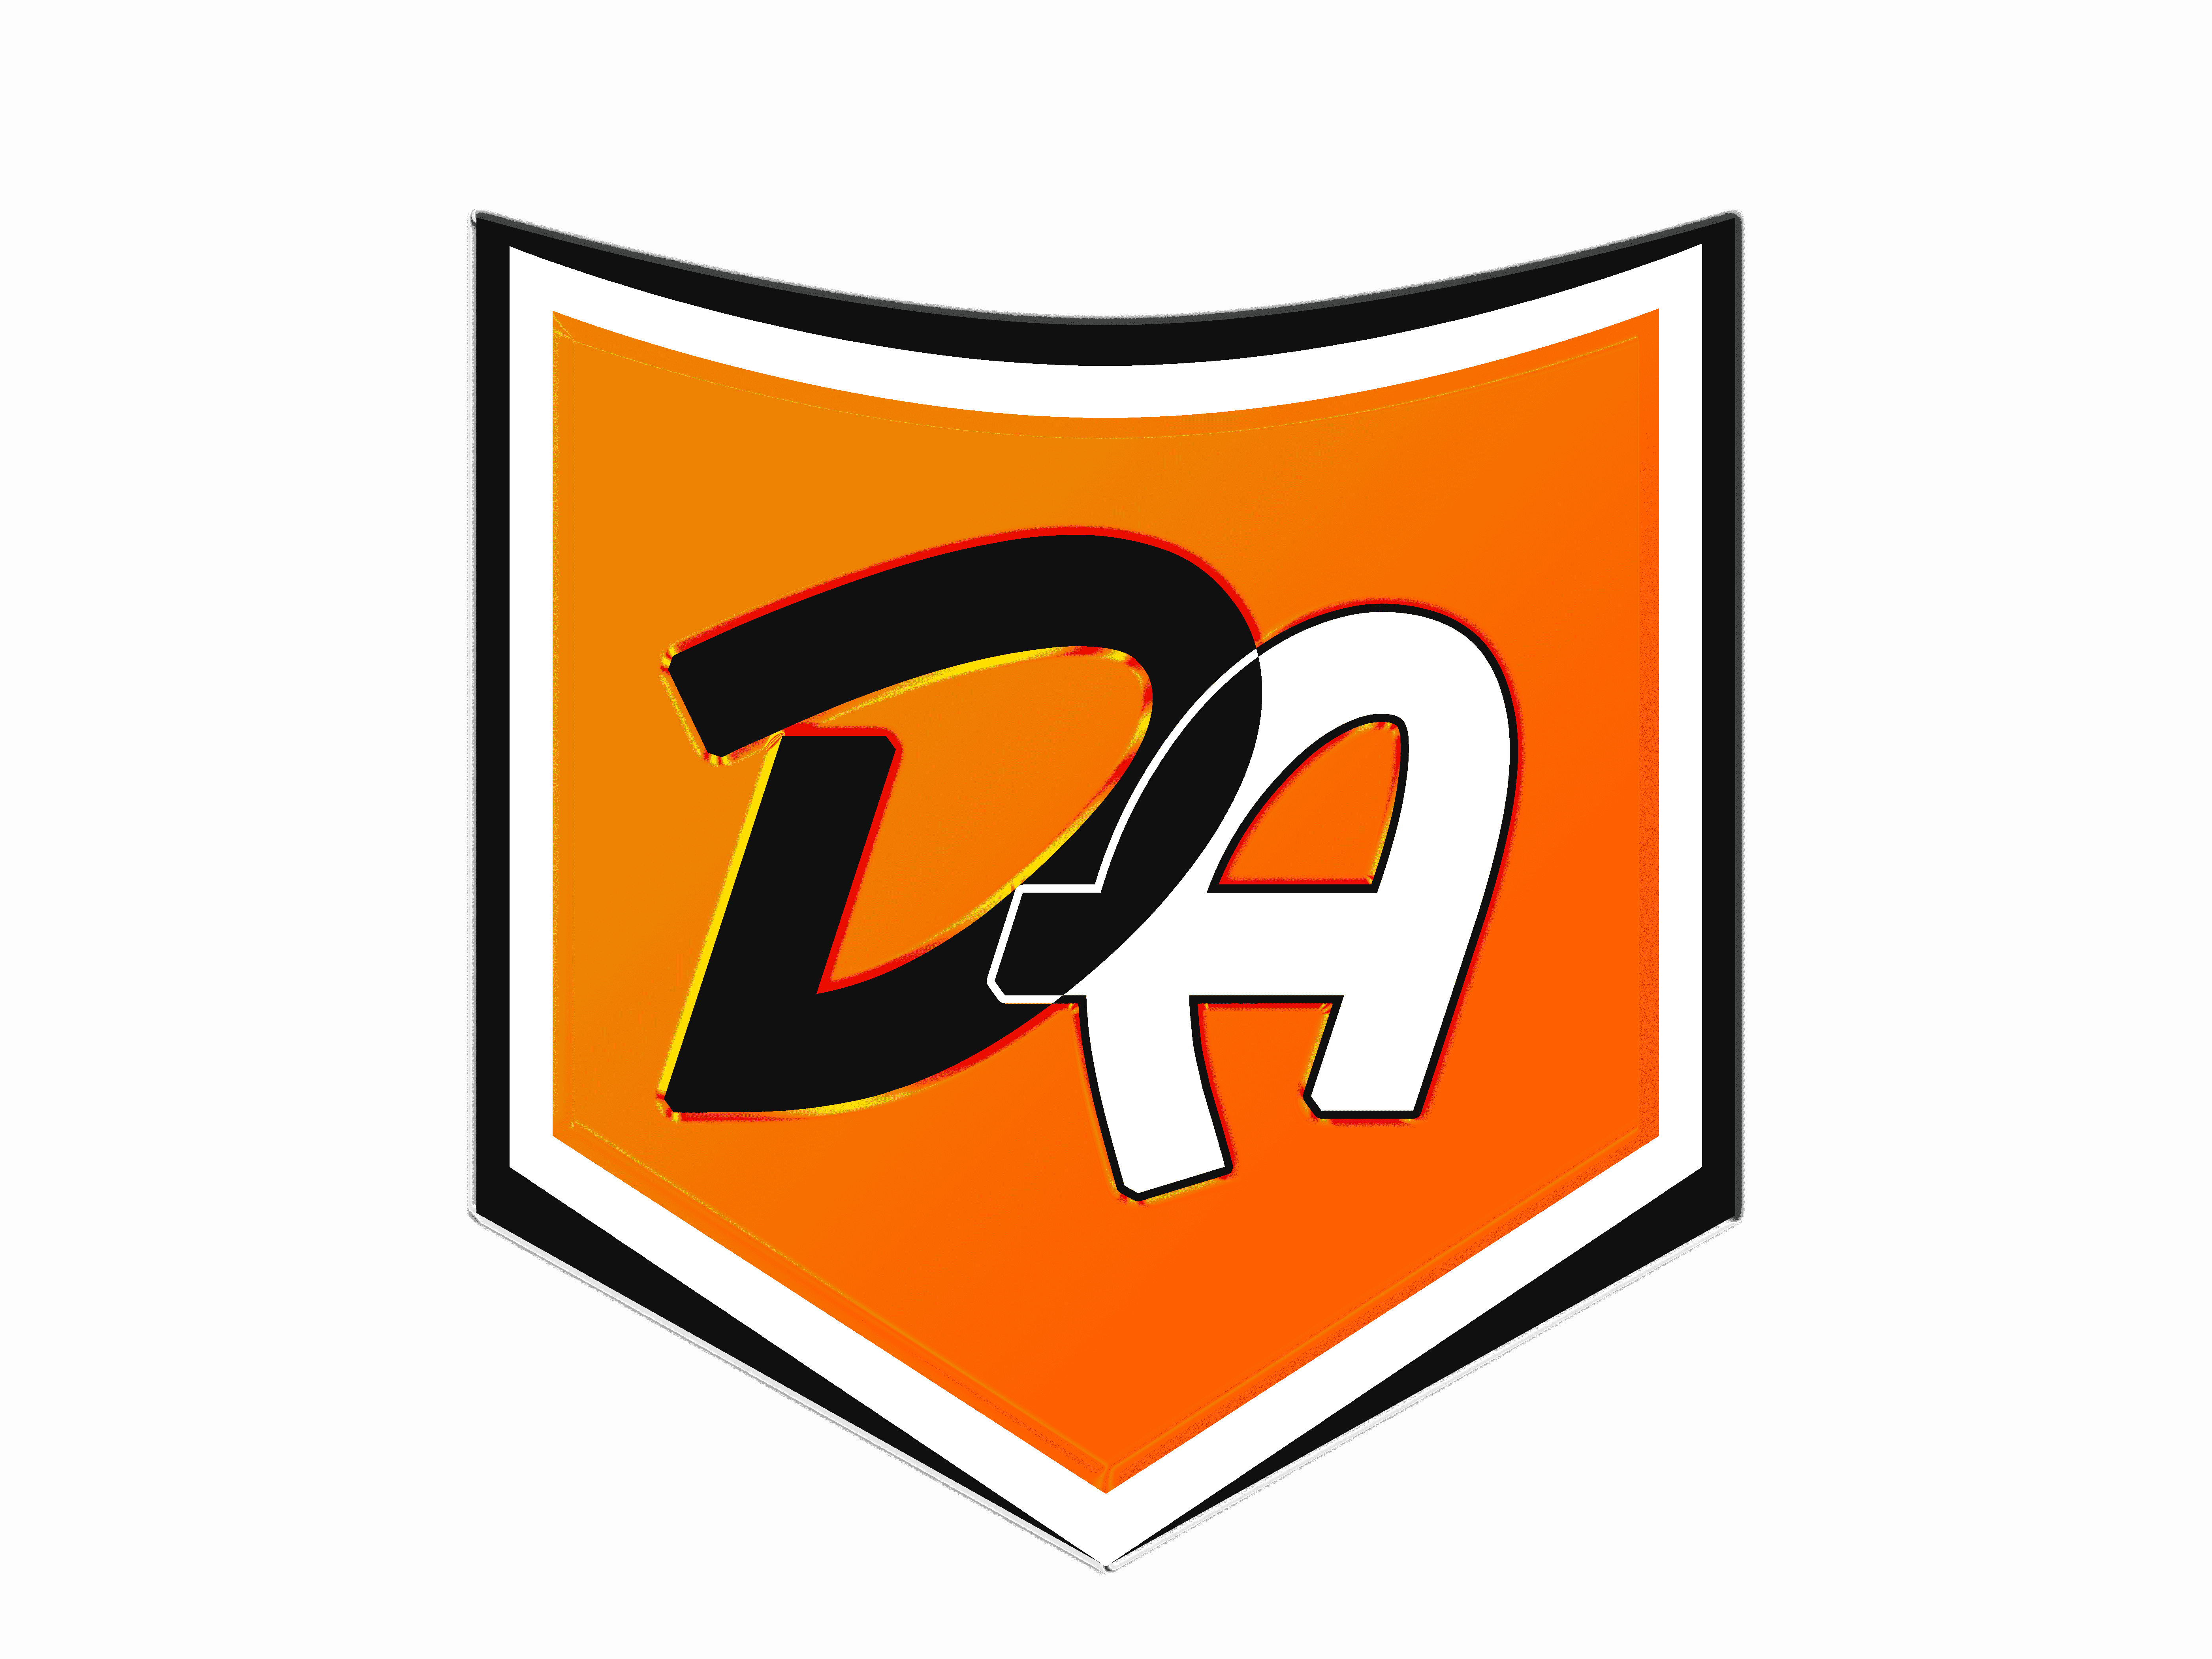 Davidayo jobs logo